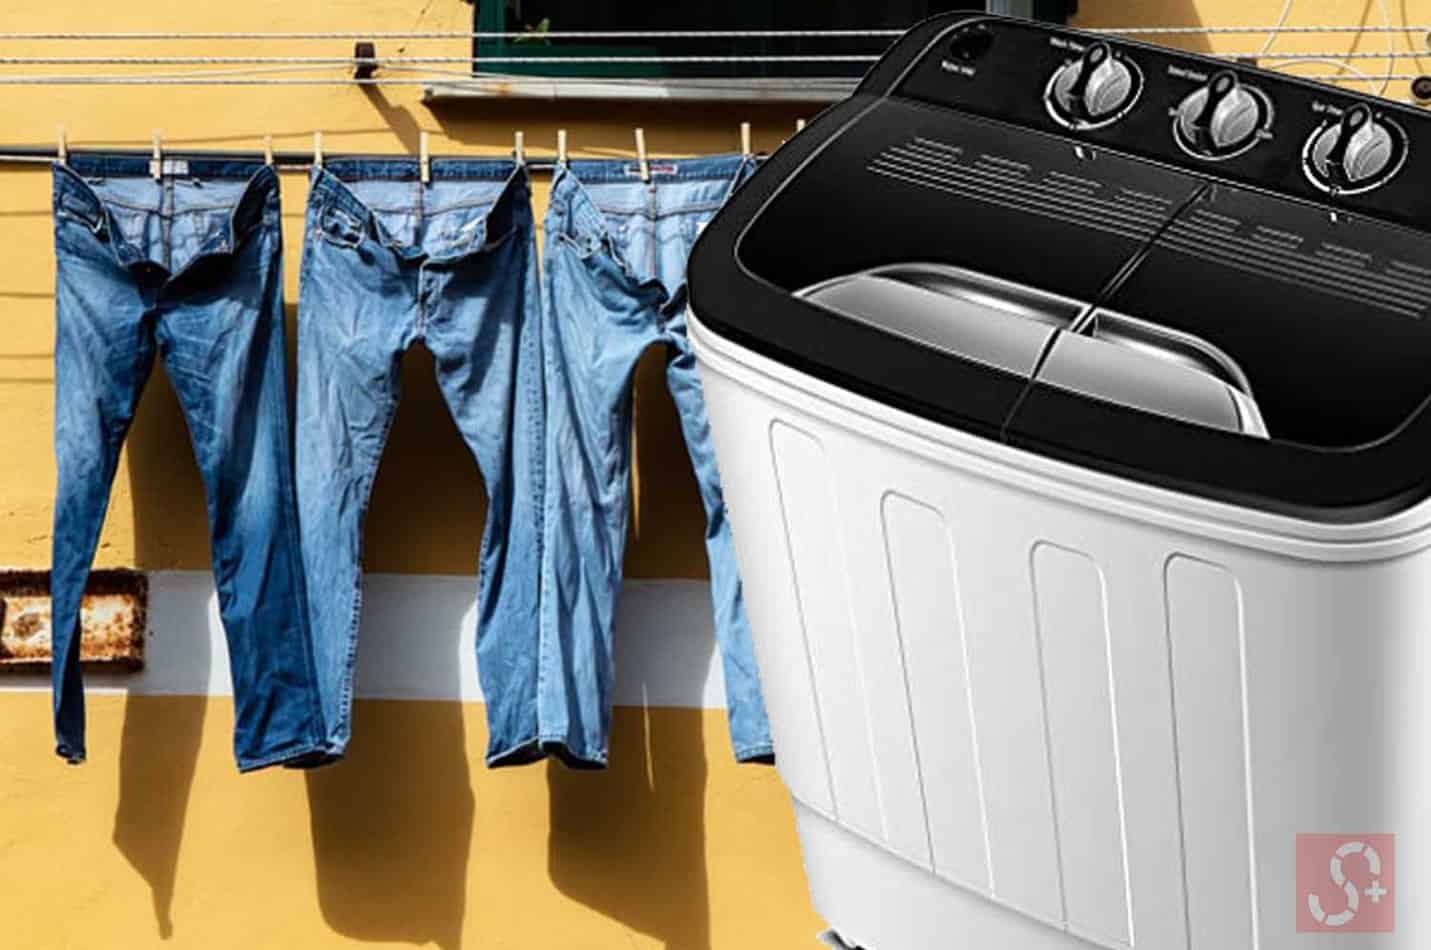 washing jeans in washing machine